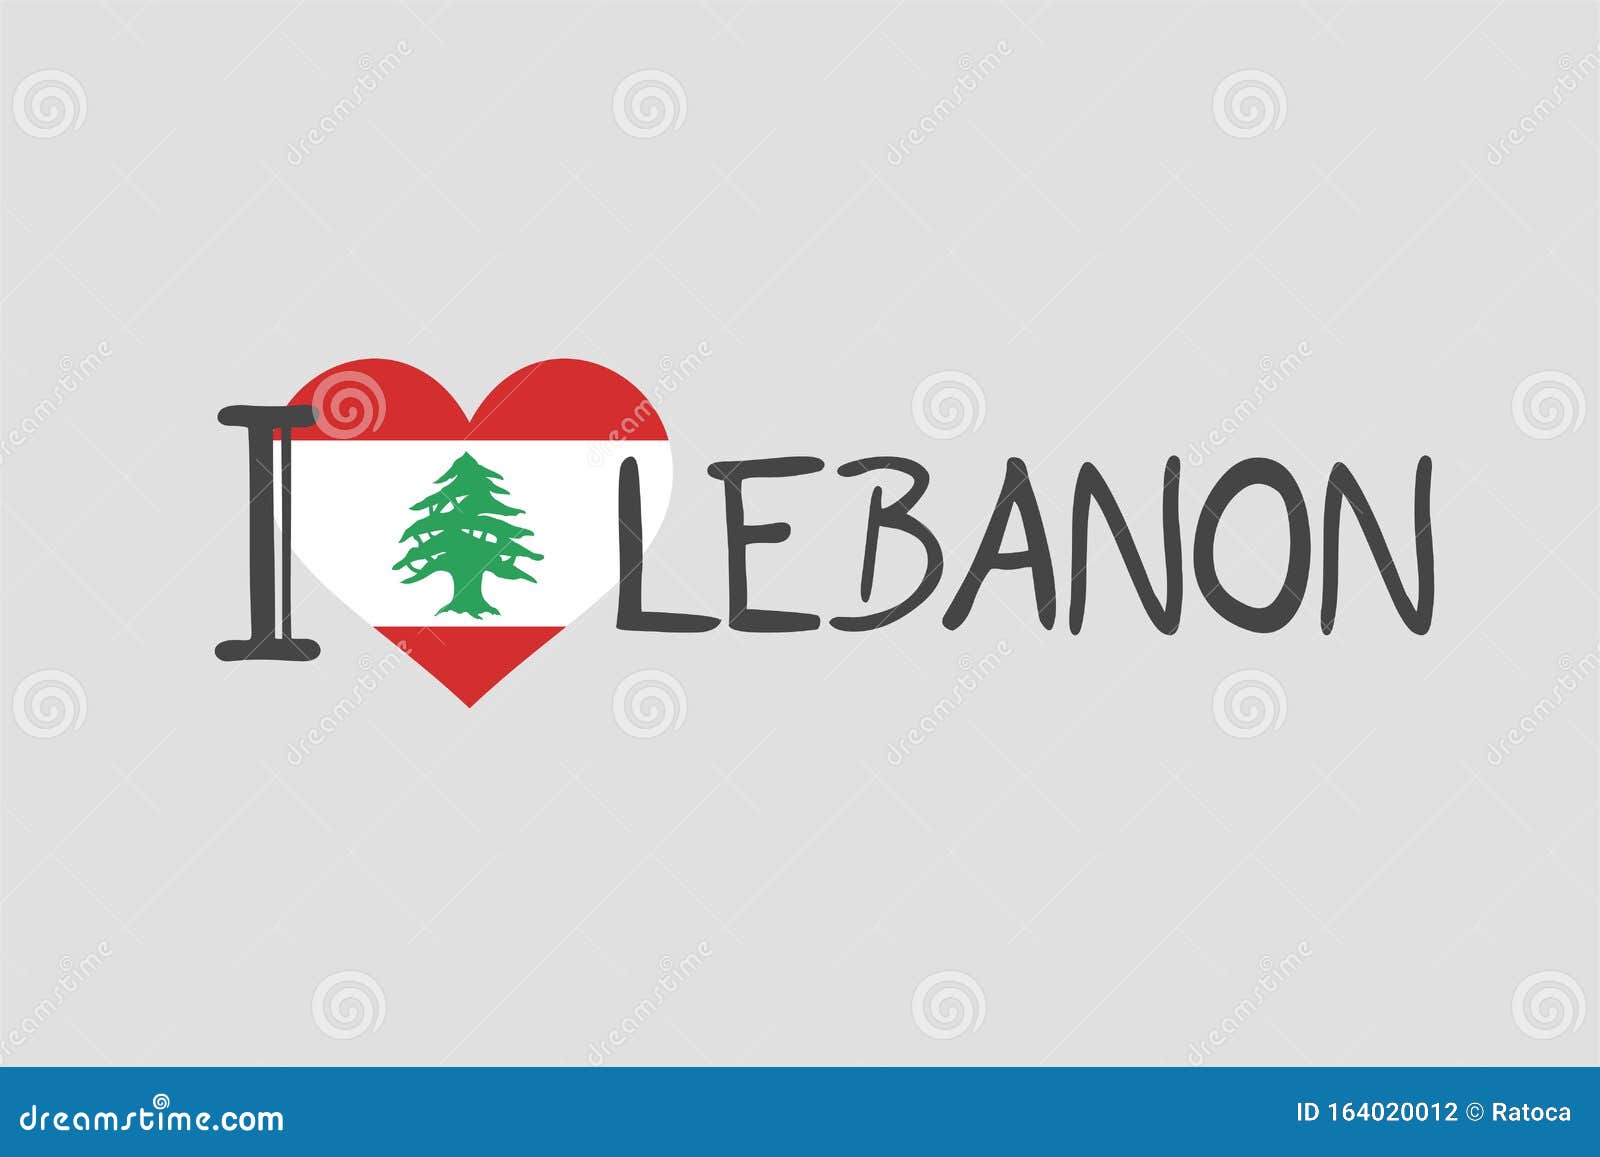 I love Lebanon symbol stock vector. Illustration of lebanese - 164020012